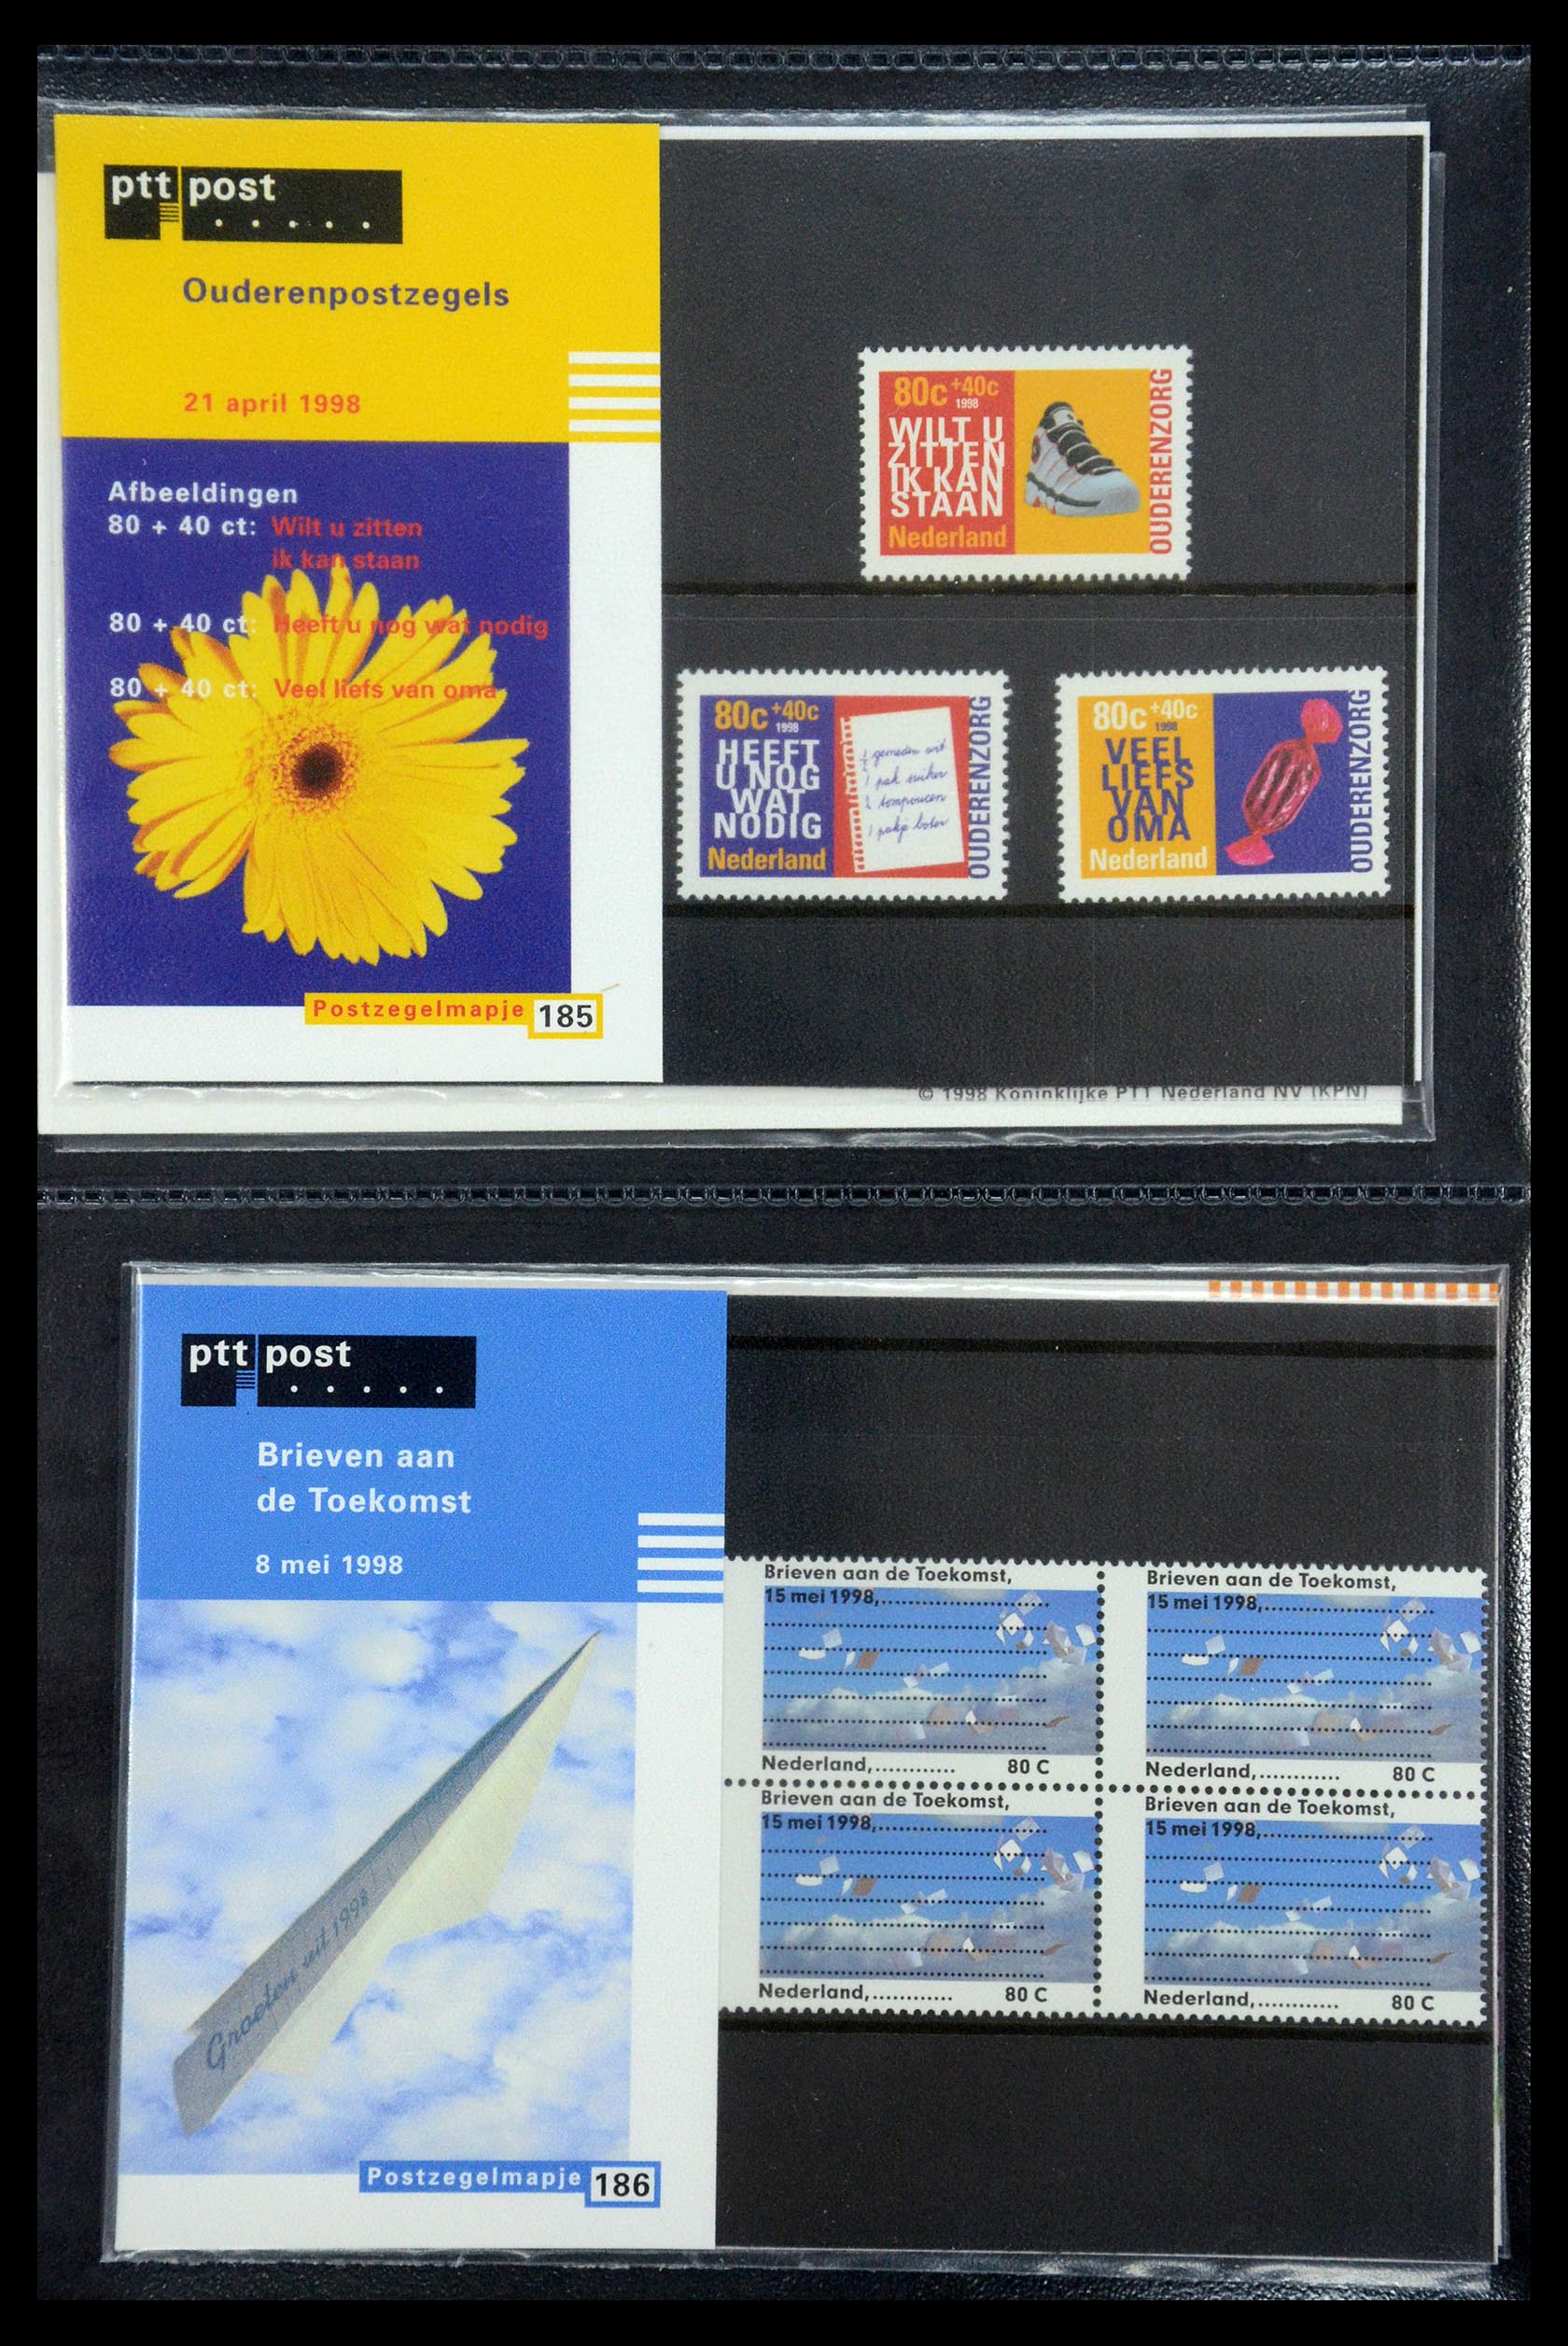 35187 095 - Stamp Collection 35187 Netherlands PTT presentation packs 1982-2019!